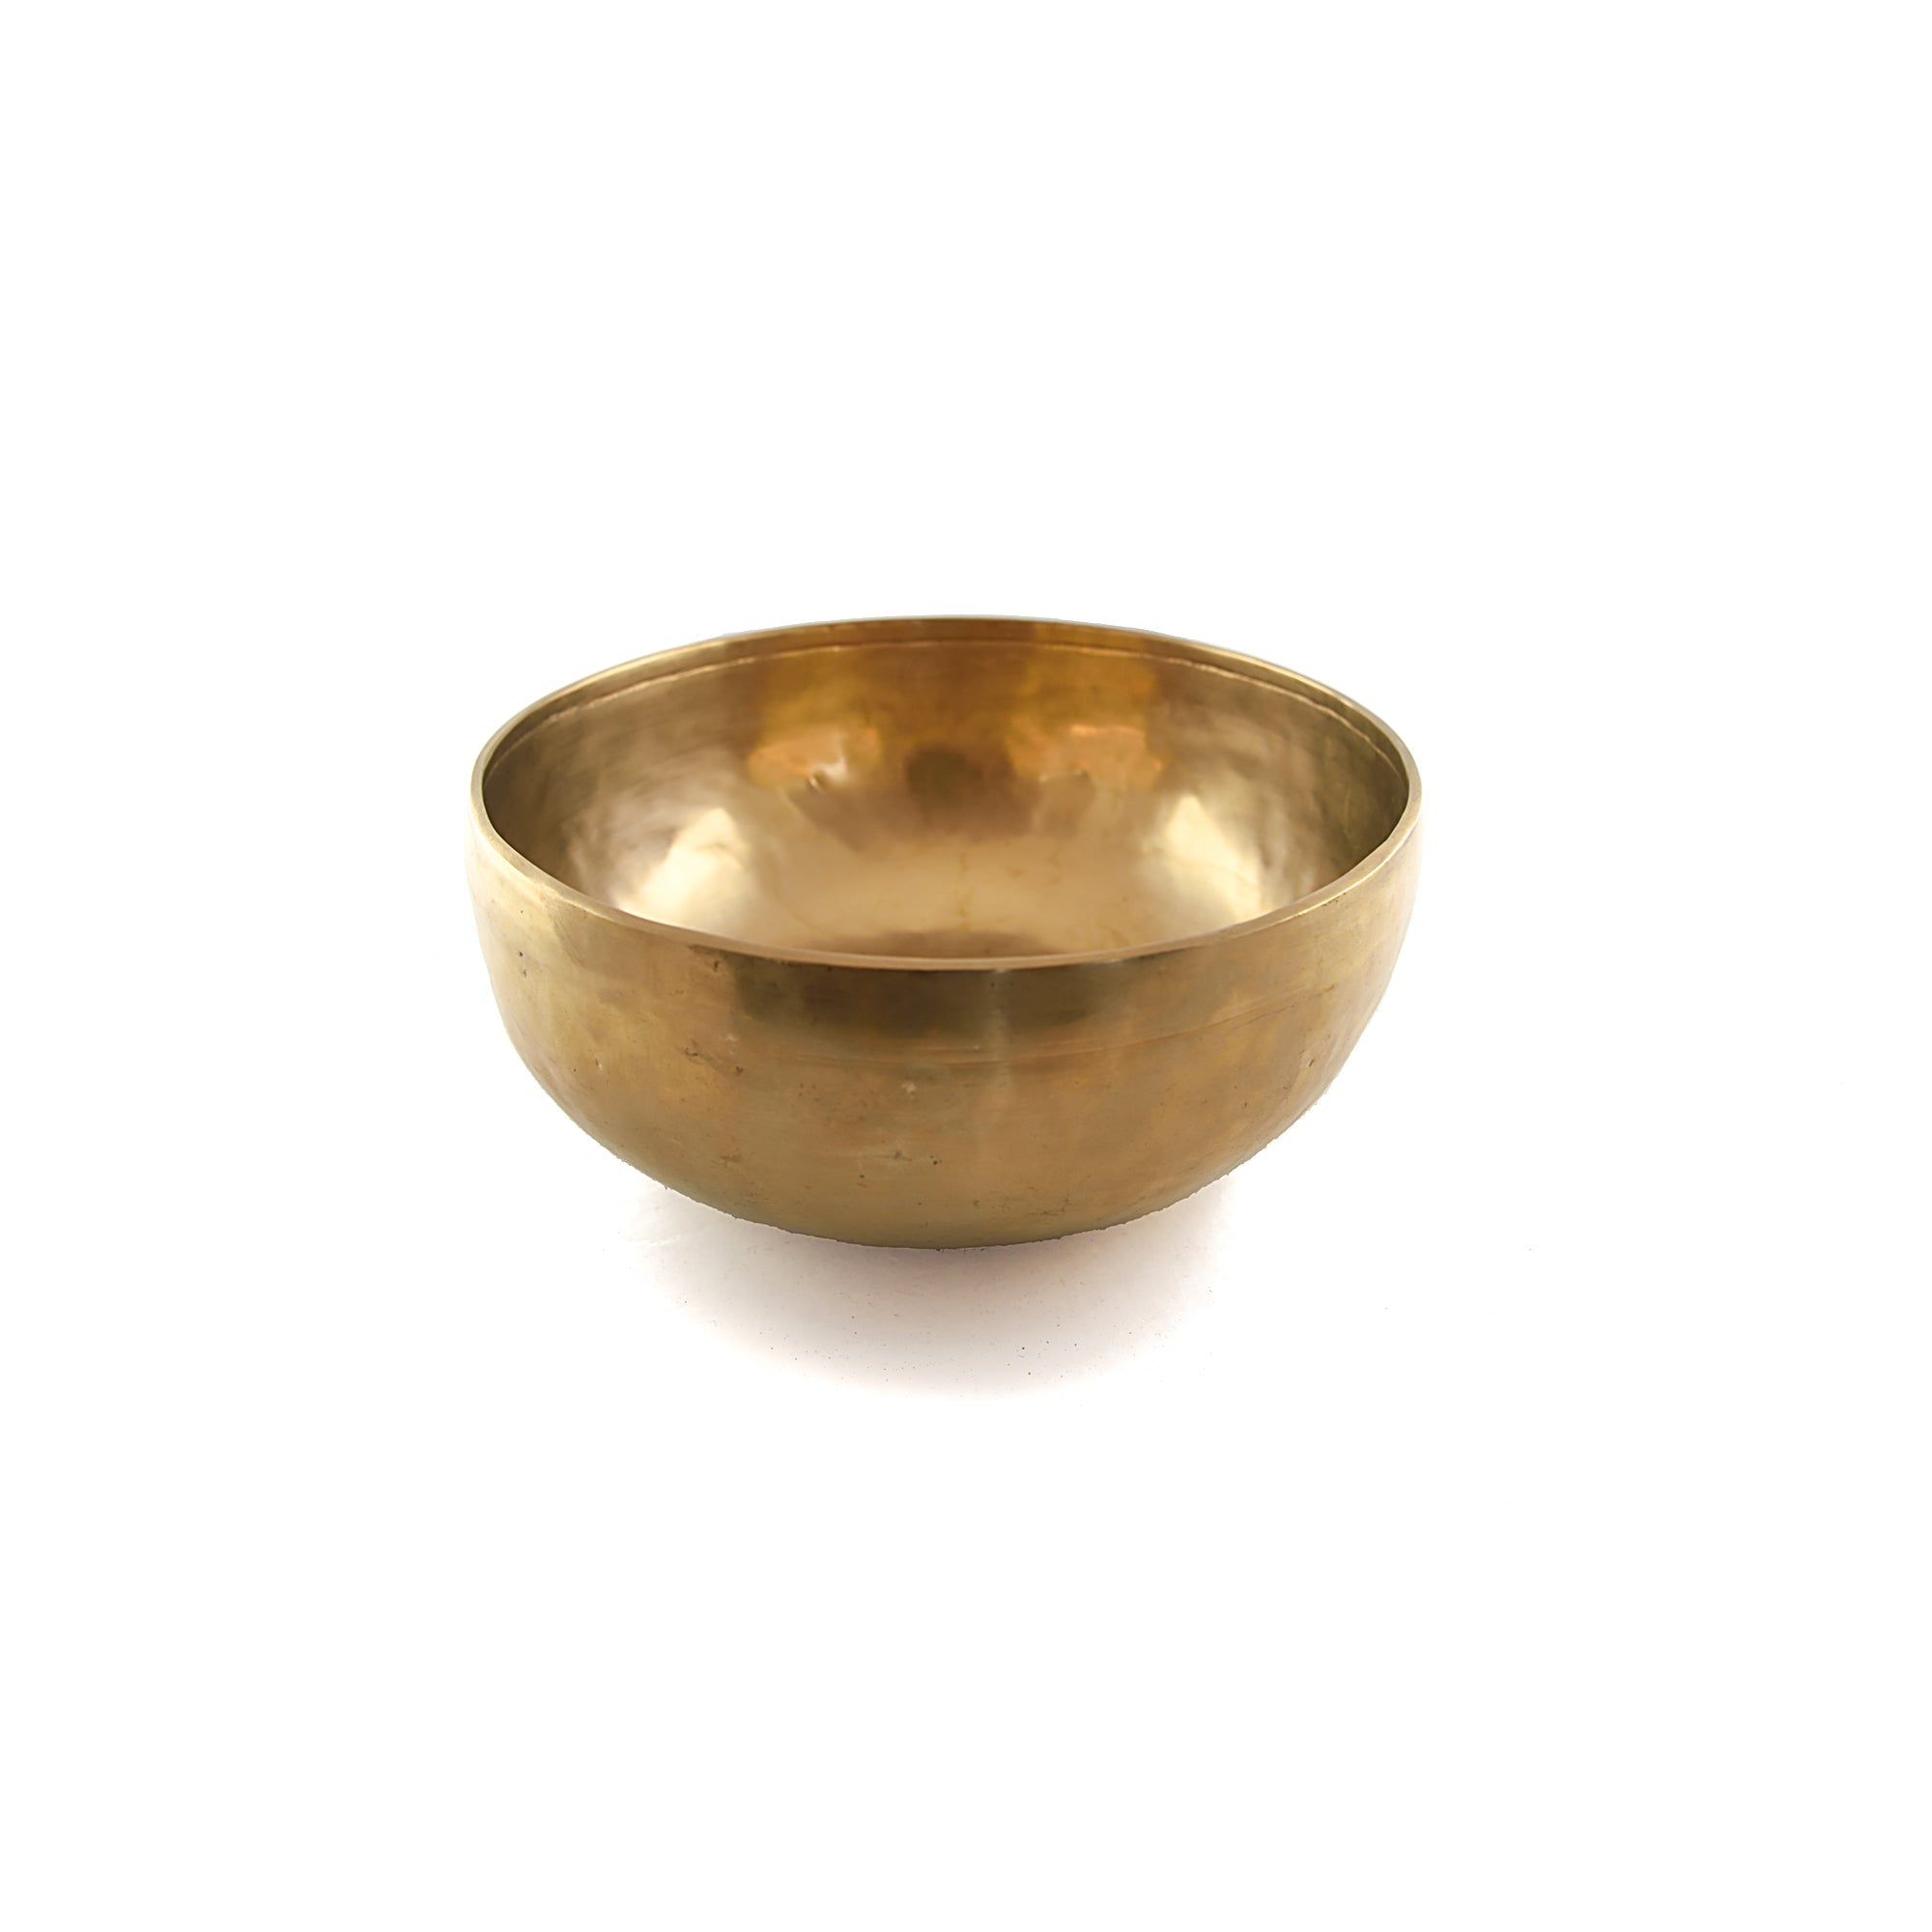 Tibetan Singing Bowl (Large) 1300-1499 gm